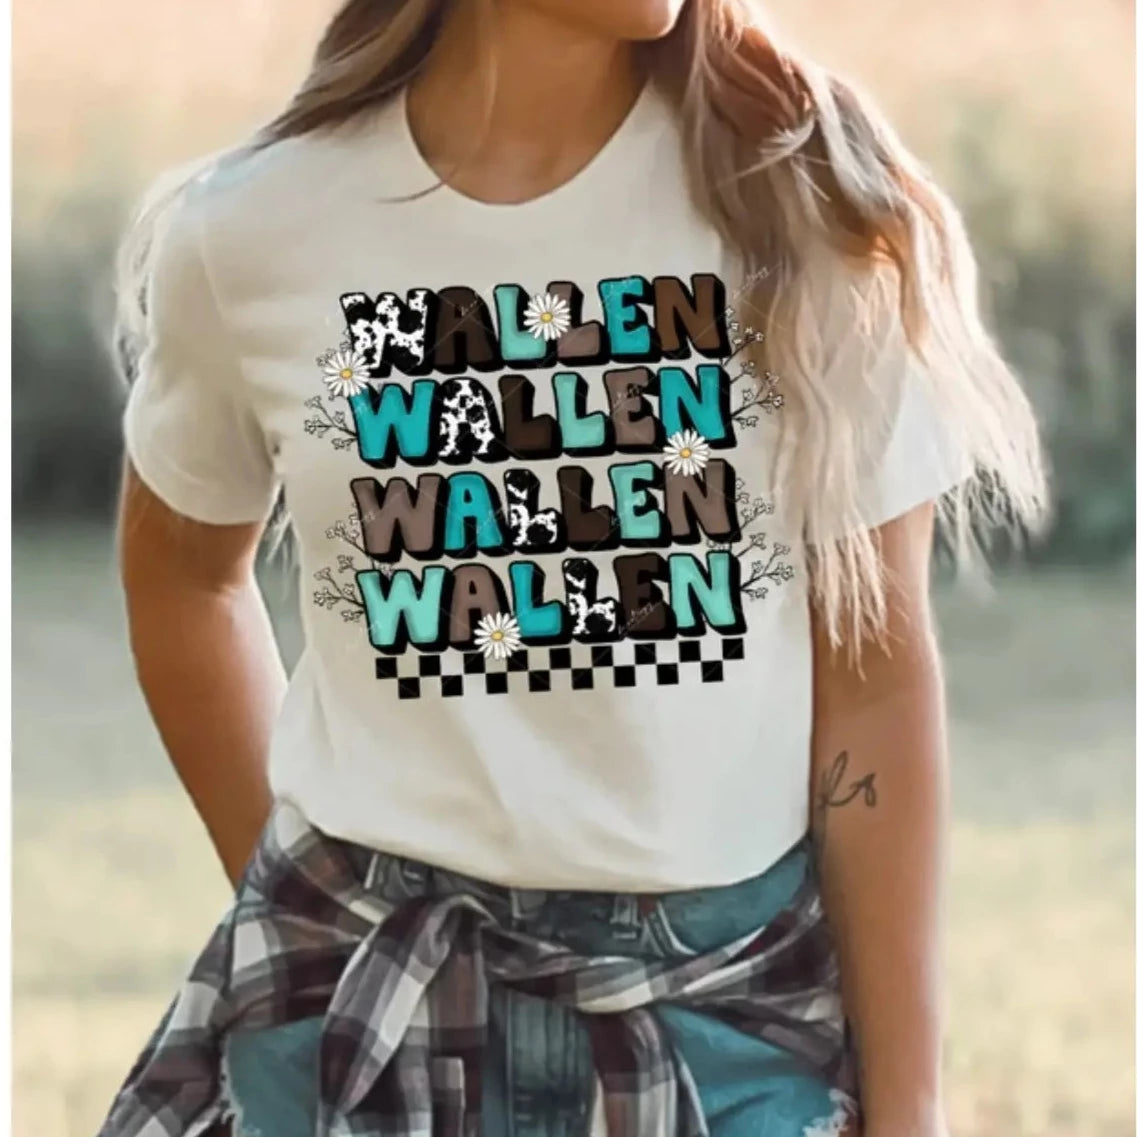 Women's Wallen Stacked Western Graphic Tee